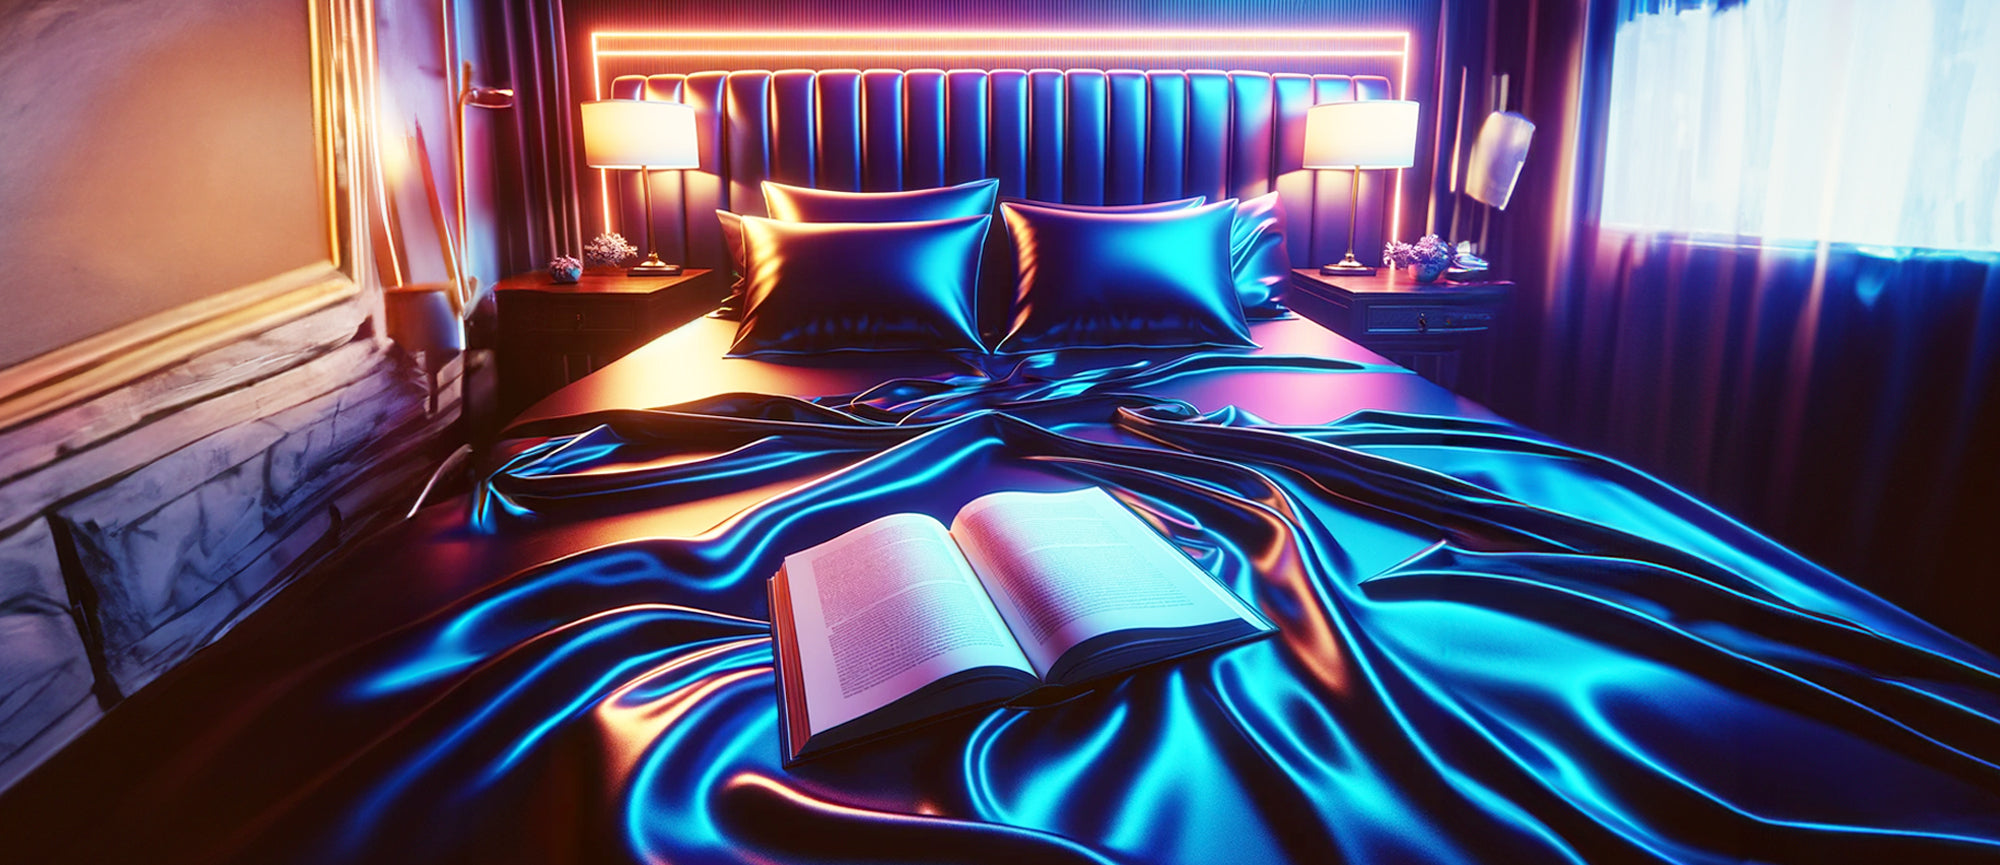 5 motivos para ler contos eróticos. Imagem criada por IA de uma cama com um livro aberto em cima.